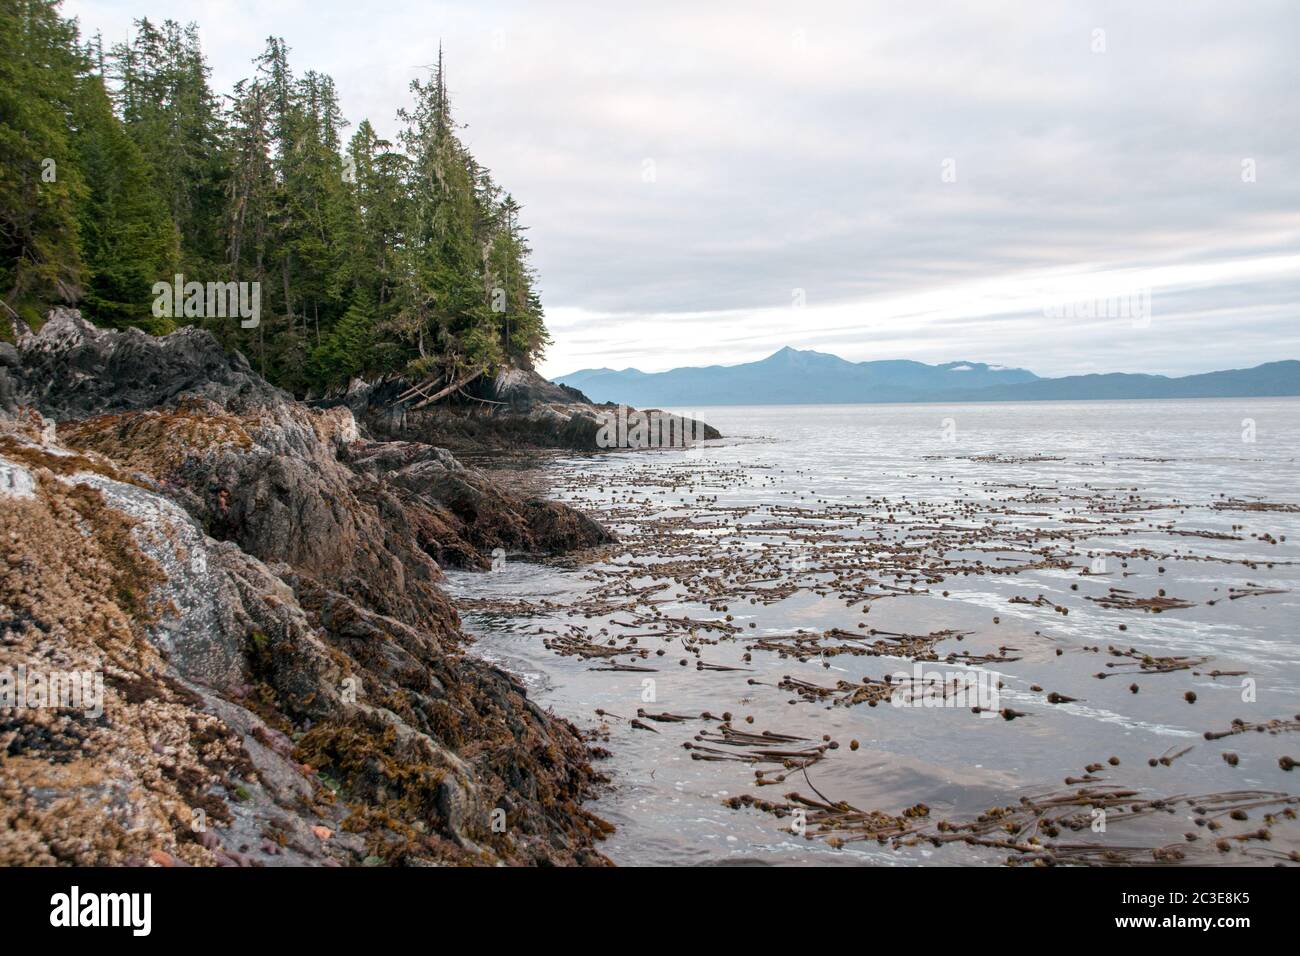 L'algue et le barnacle de whip du taureau couvraient les rives rocheuses d'une zone intertidale de l'océan Pacifique dans la forêt tropicale du Grand Ours, en Colombie-Britannique, au Canada. Banque D'Images